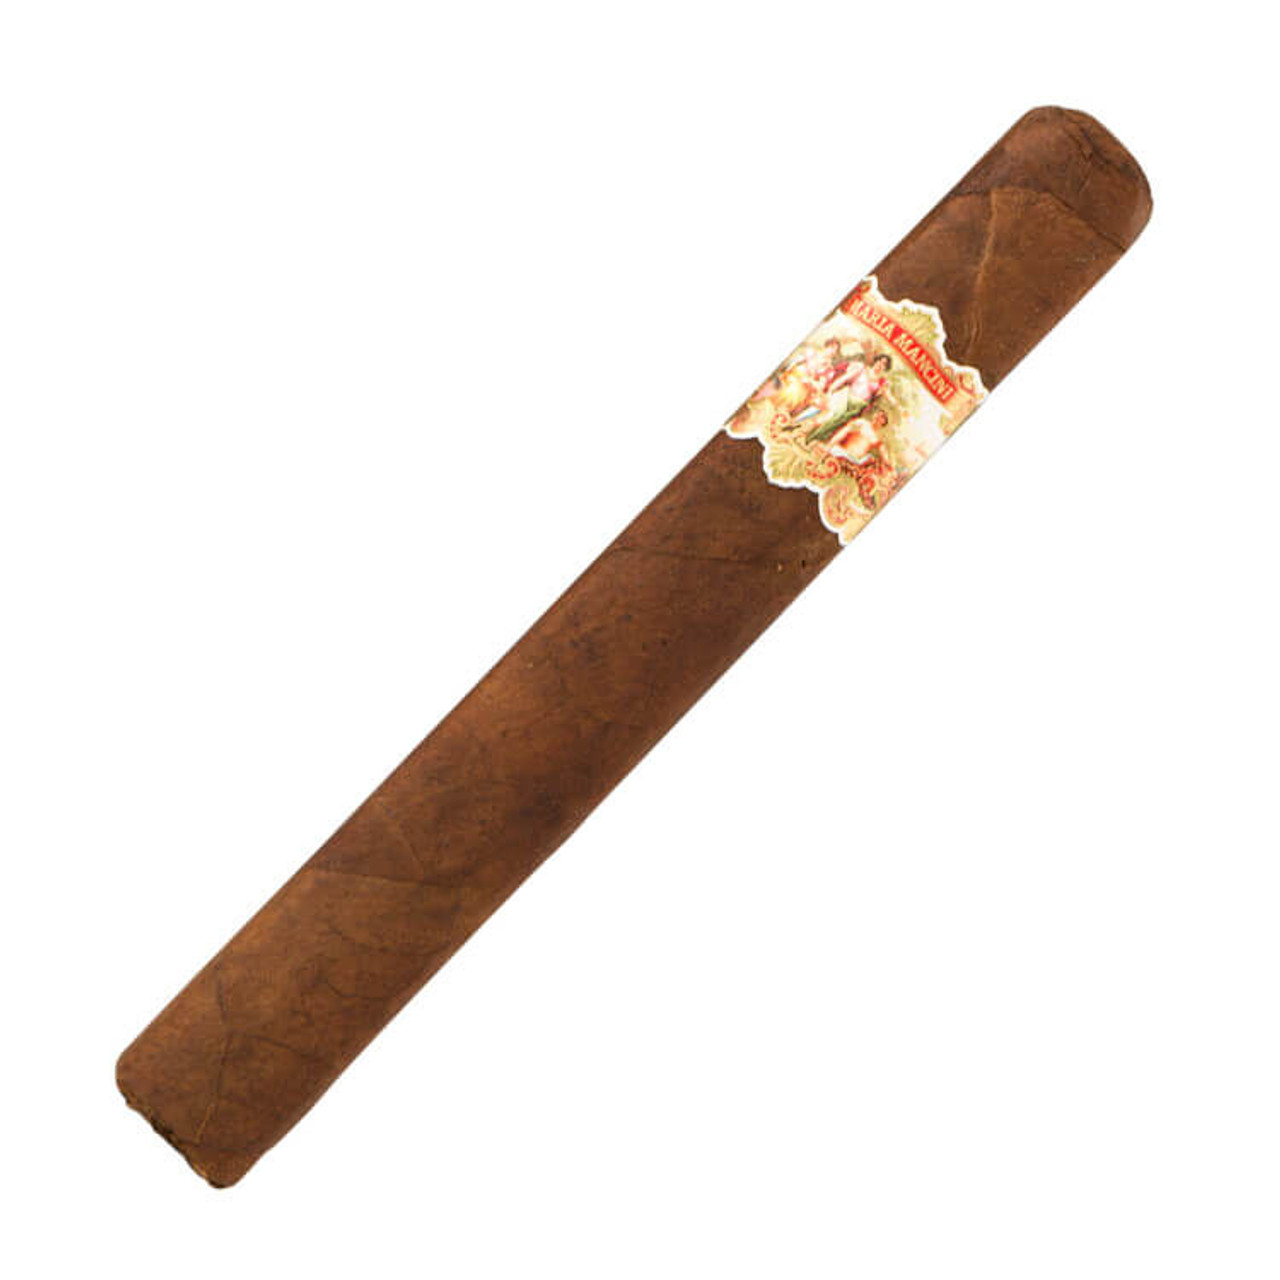 Maria Mancini Robusto Larga Sampler Cigars - 6 x 50 Single